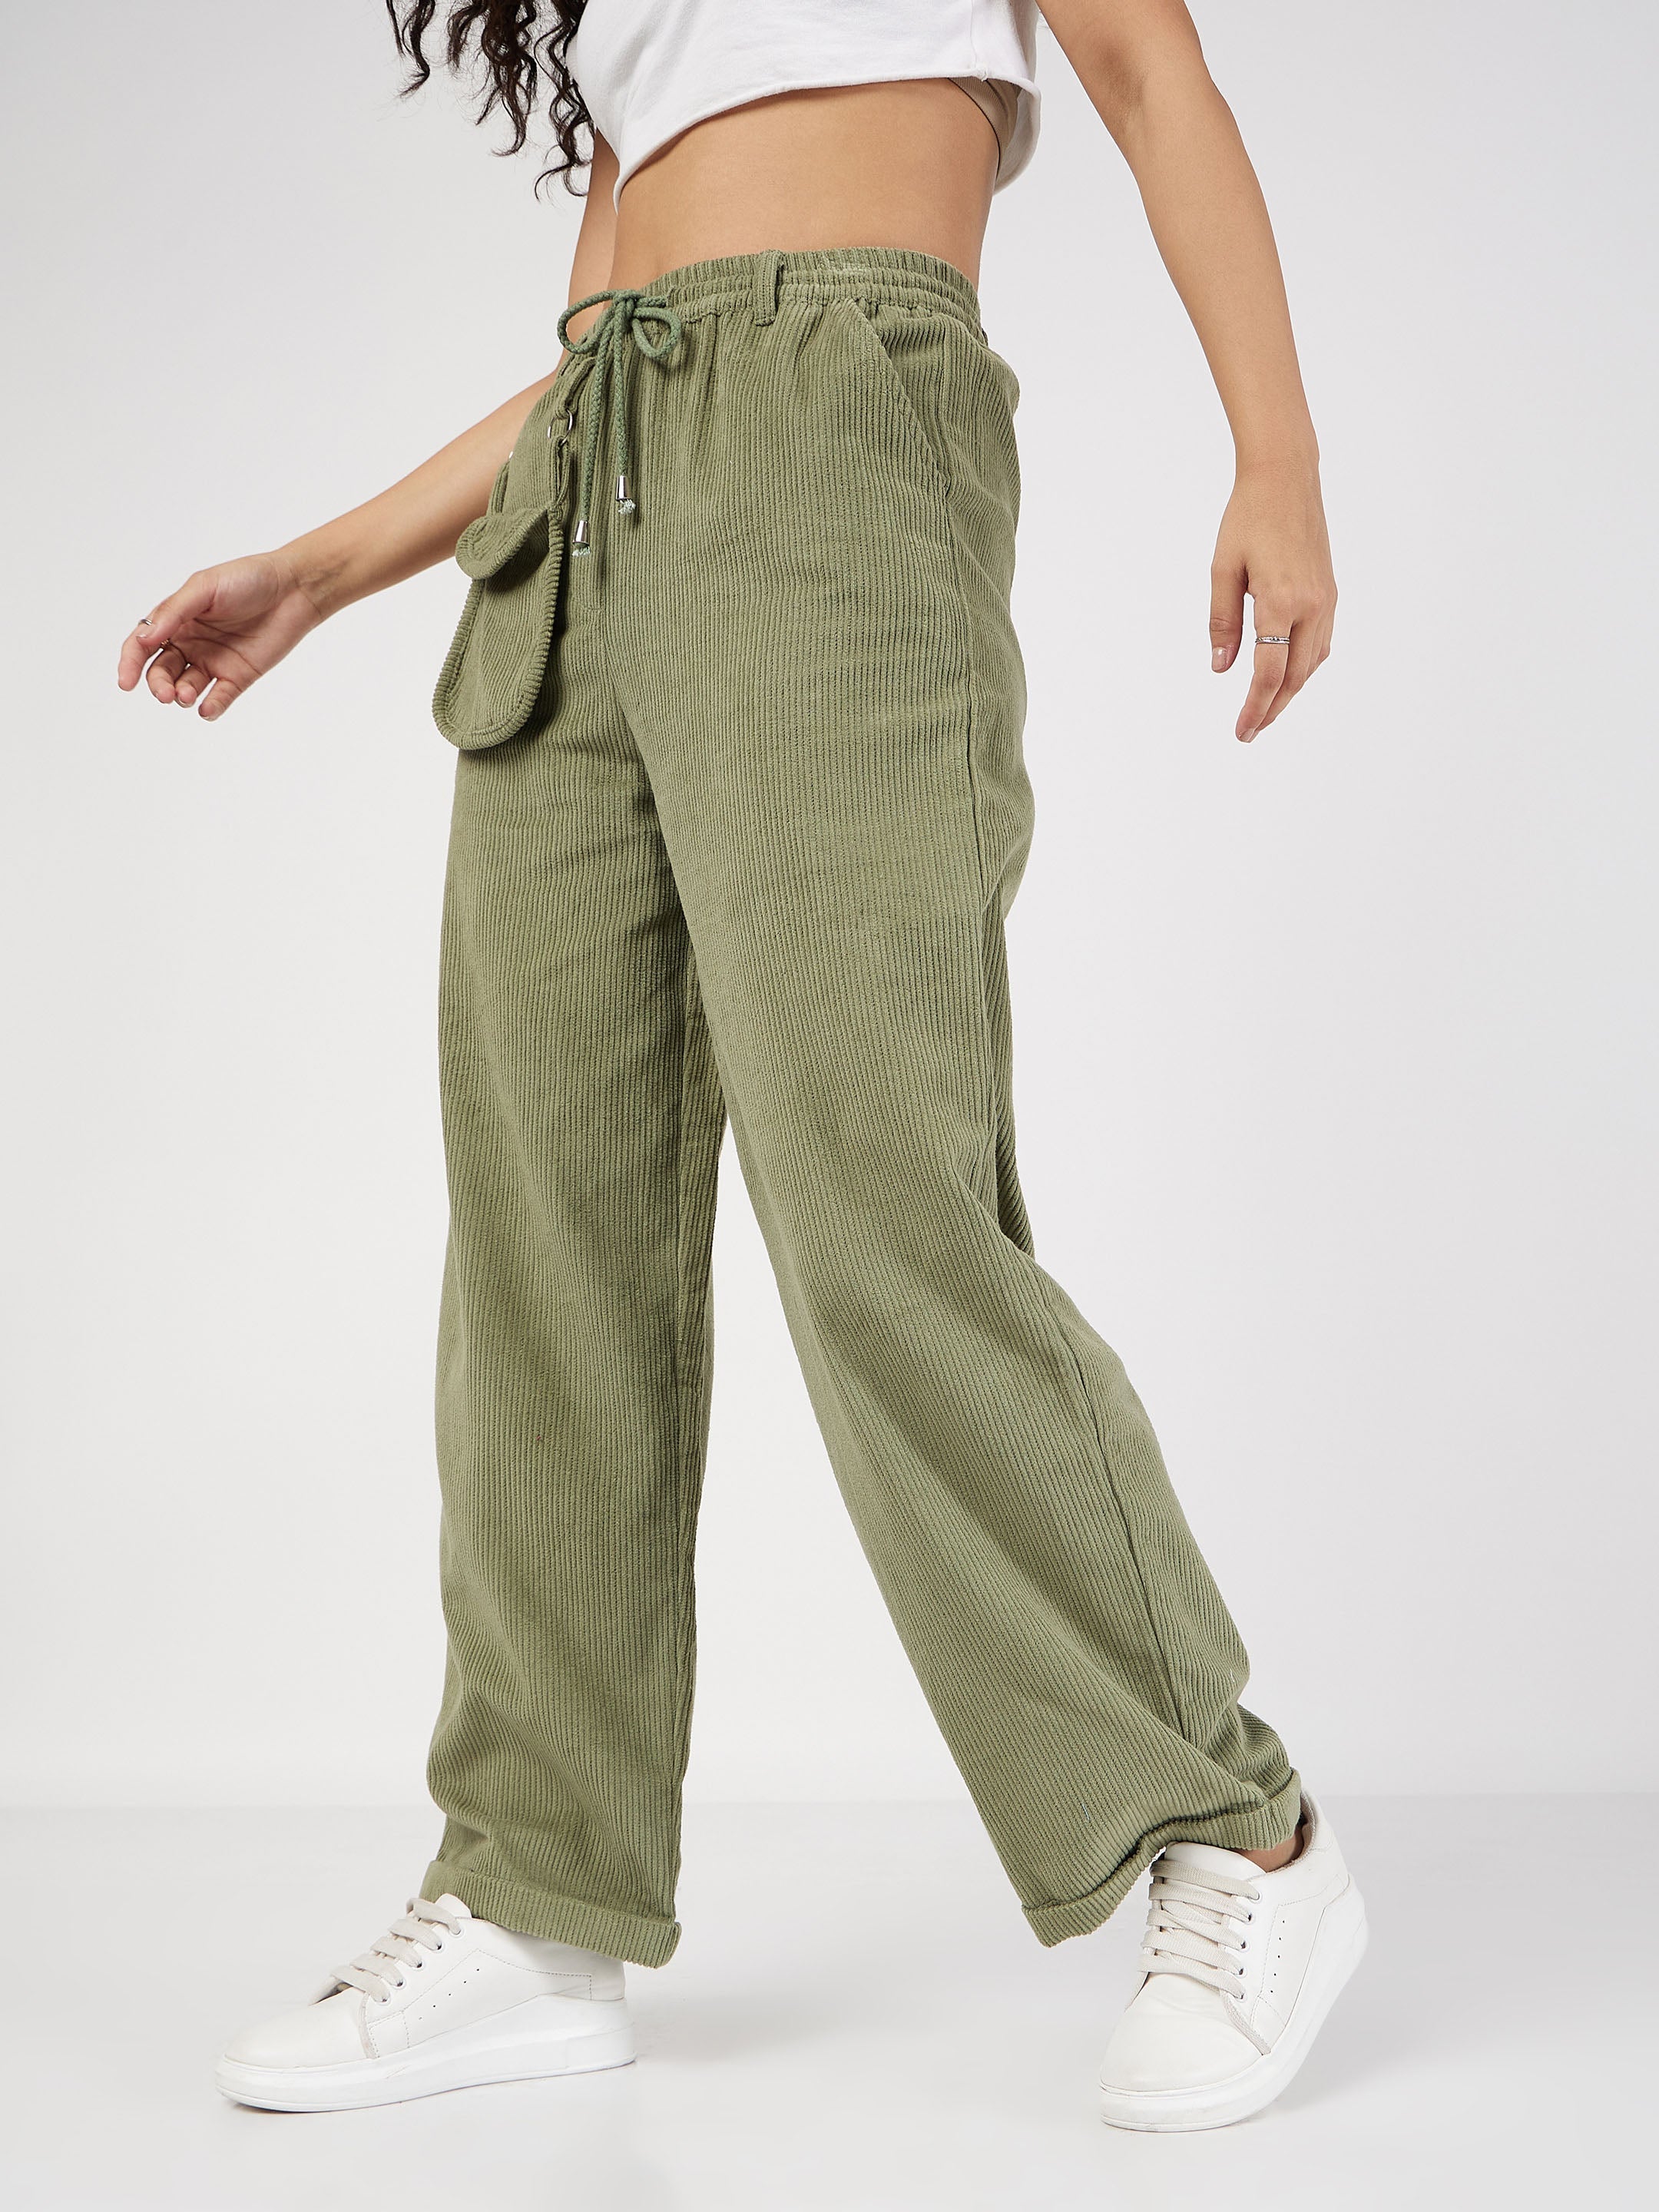 Women's Olive Corduroy Pouch Pocket Drawstring Pants - Lyush